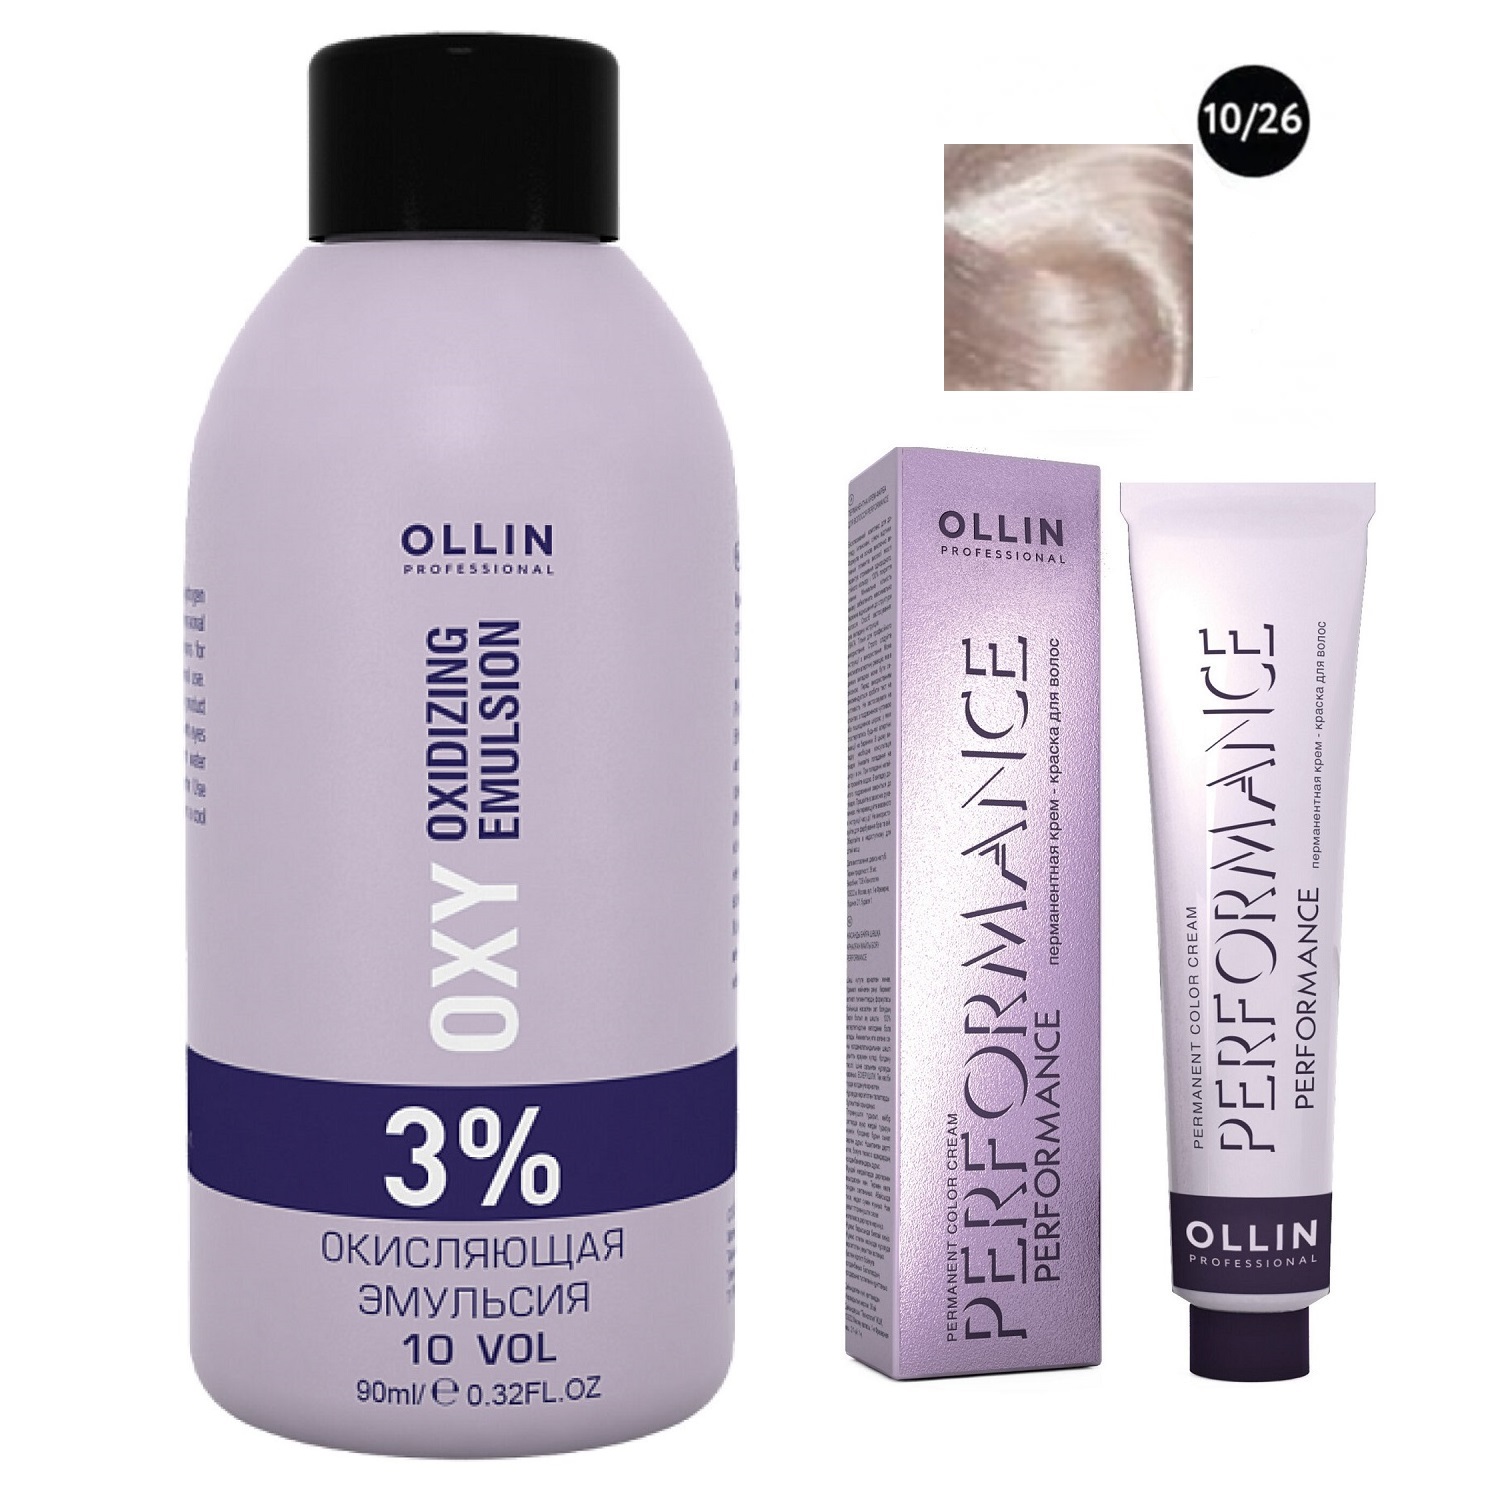 Ollin Professional Набор Перманентная крем-краска для волос Ollin Color оттенок 10/26 светлый блондин розовый 60 мл + Окисляющая эмульсия Oxy 3% 90 мл (Ollin Professional, Performance)